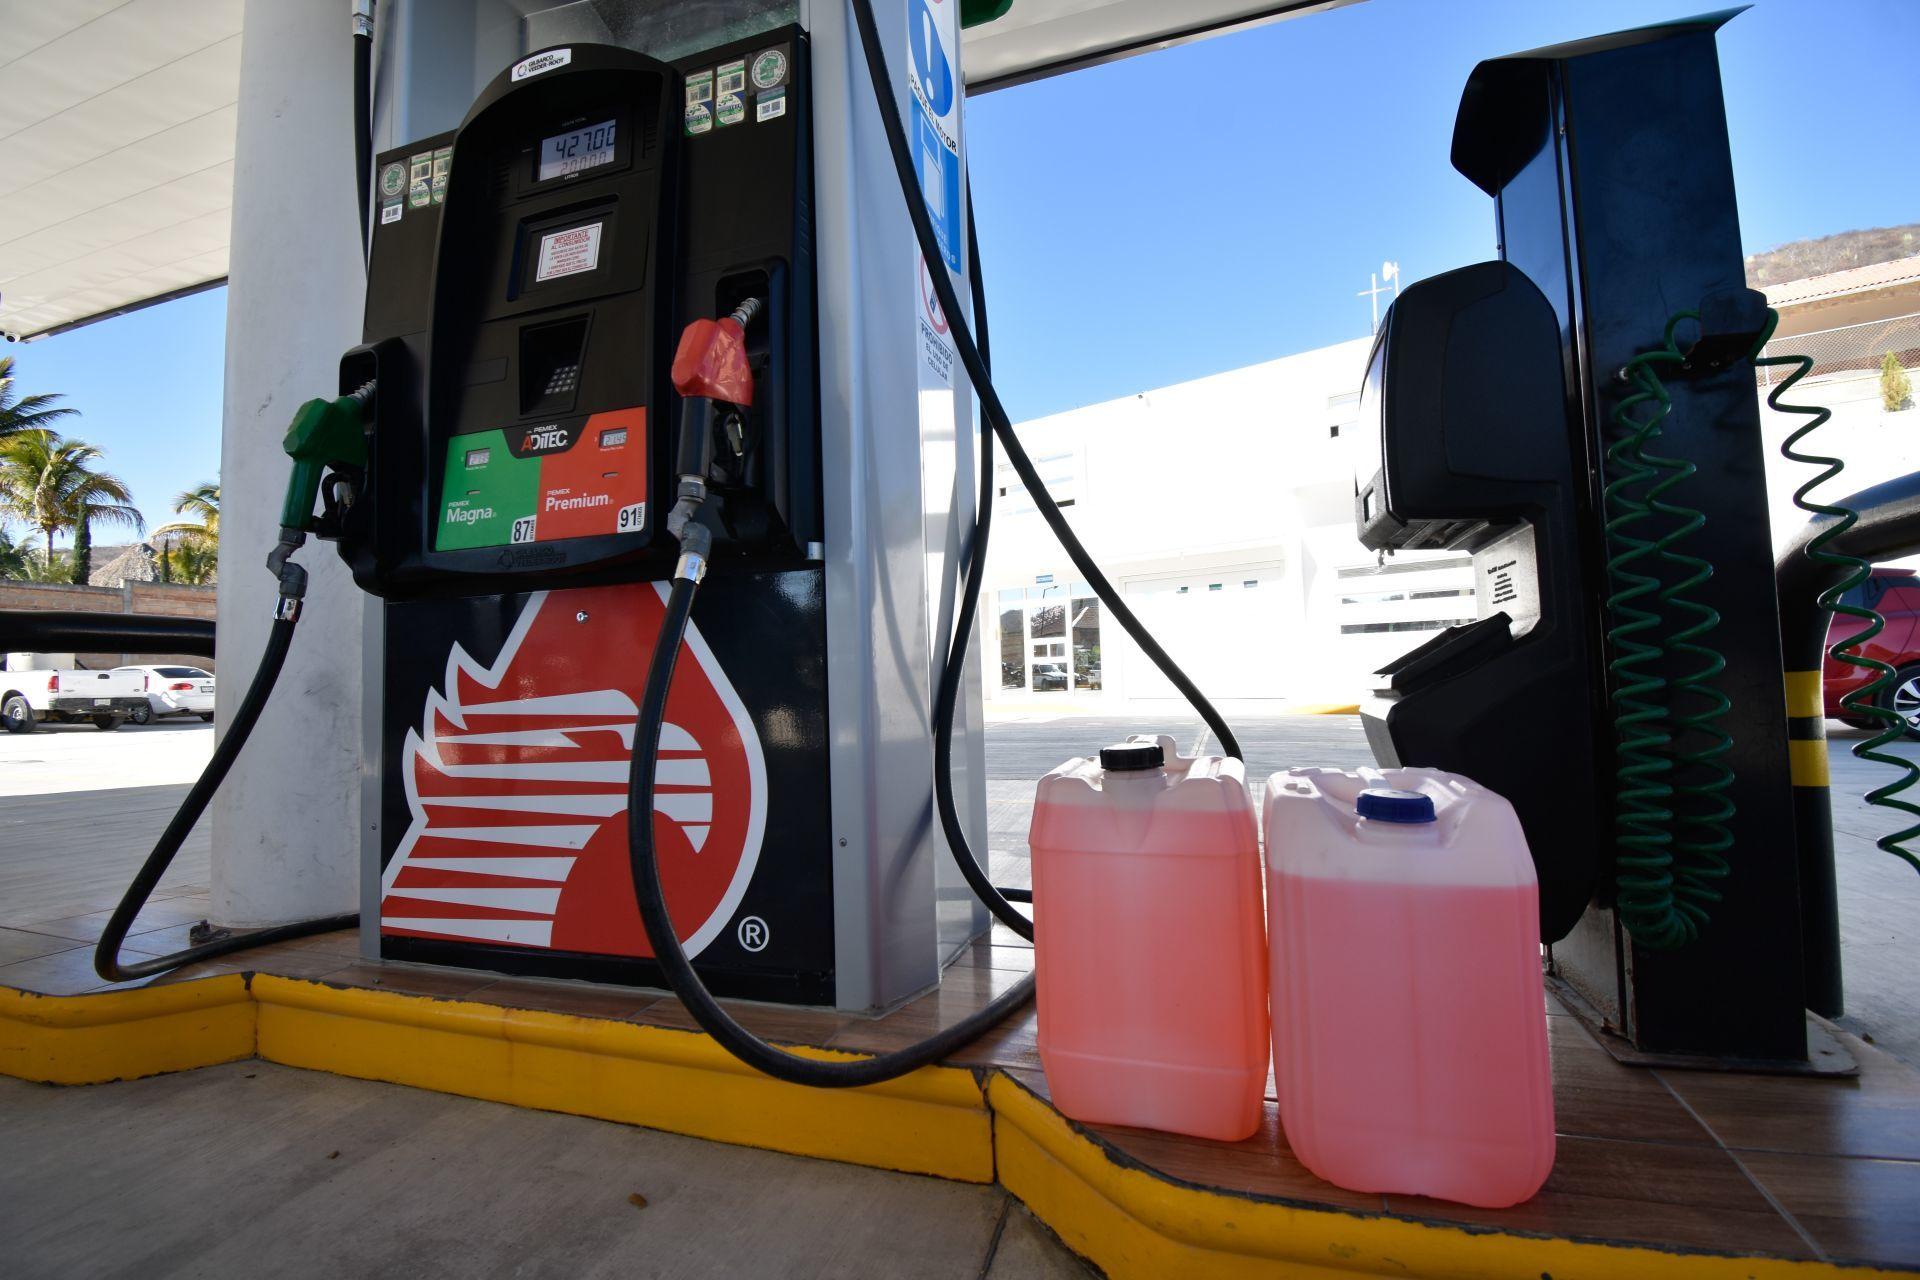 Alza en precios de gas y gasolina llevan a la inflación a 4.67%, su mayor nivel desde 2018